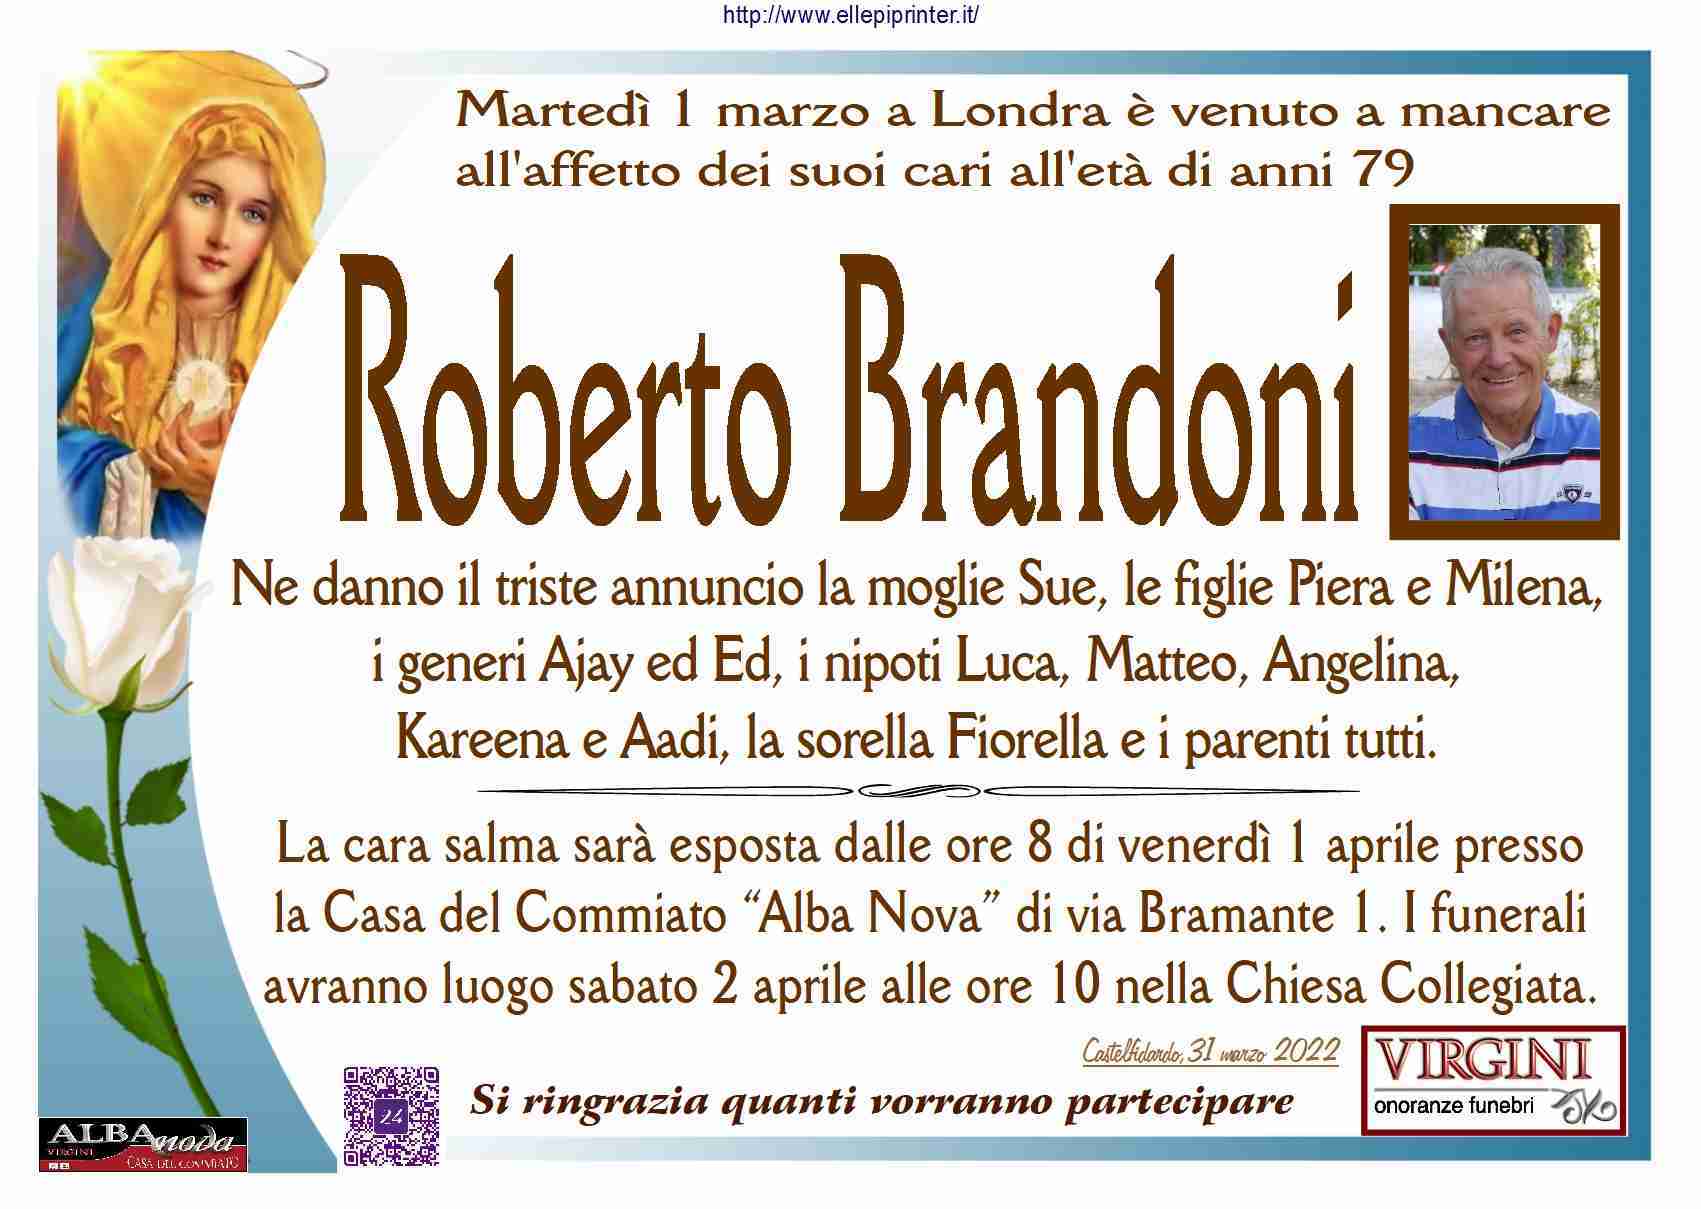 Roberto Brandoni